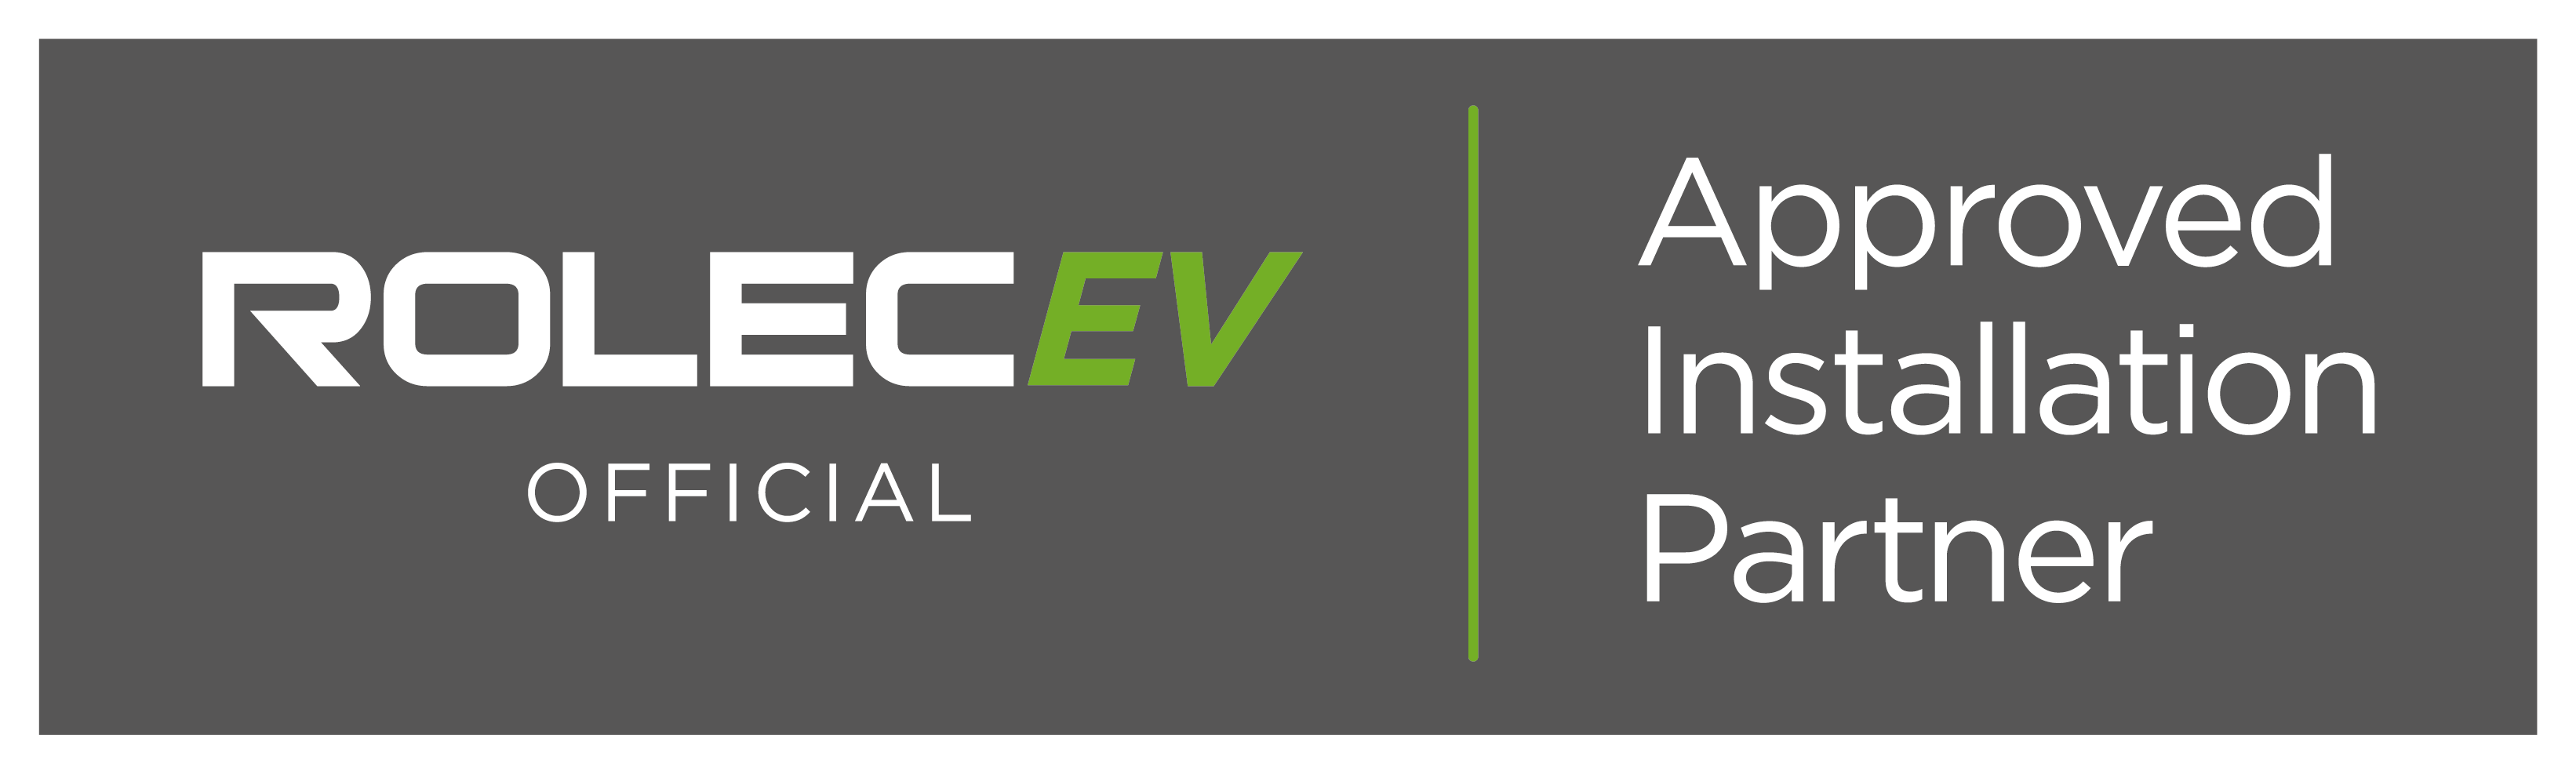 Rolec EV Official Installer Badges - Grey